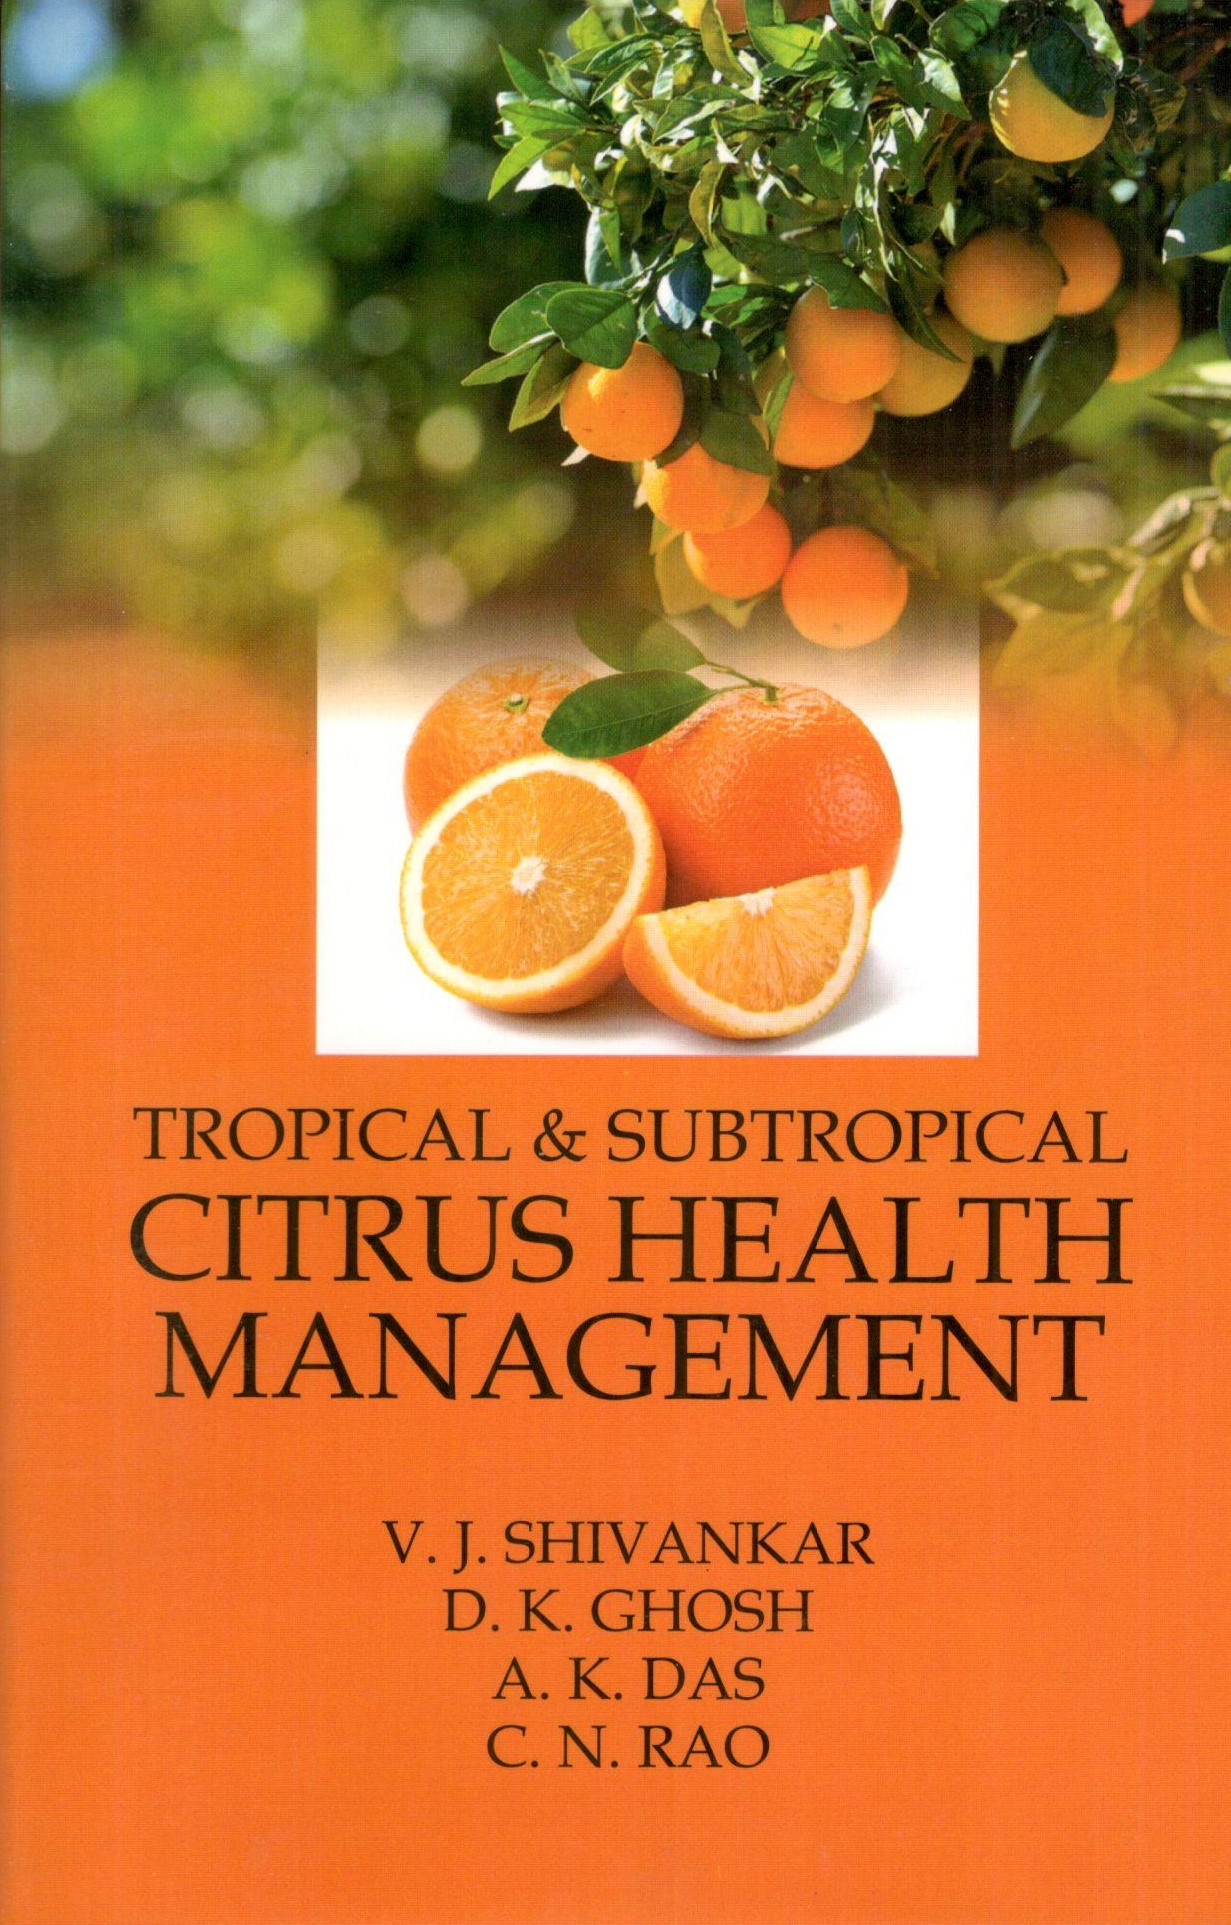 Tropical & Subtropical Citrus Health Management